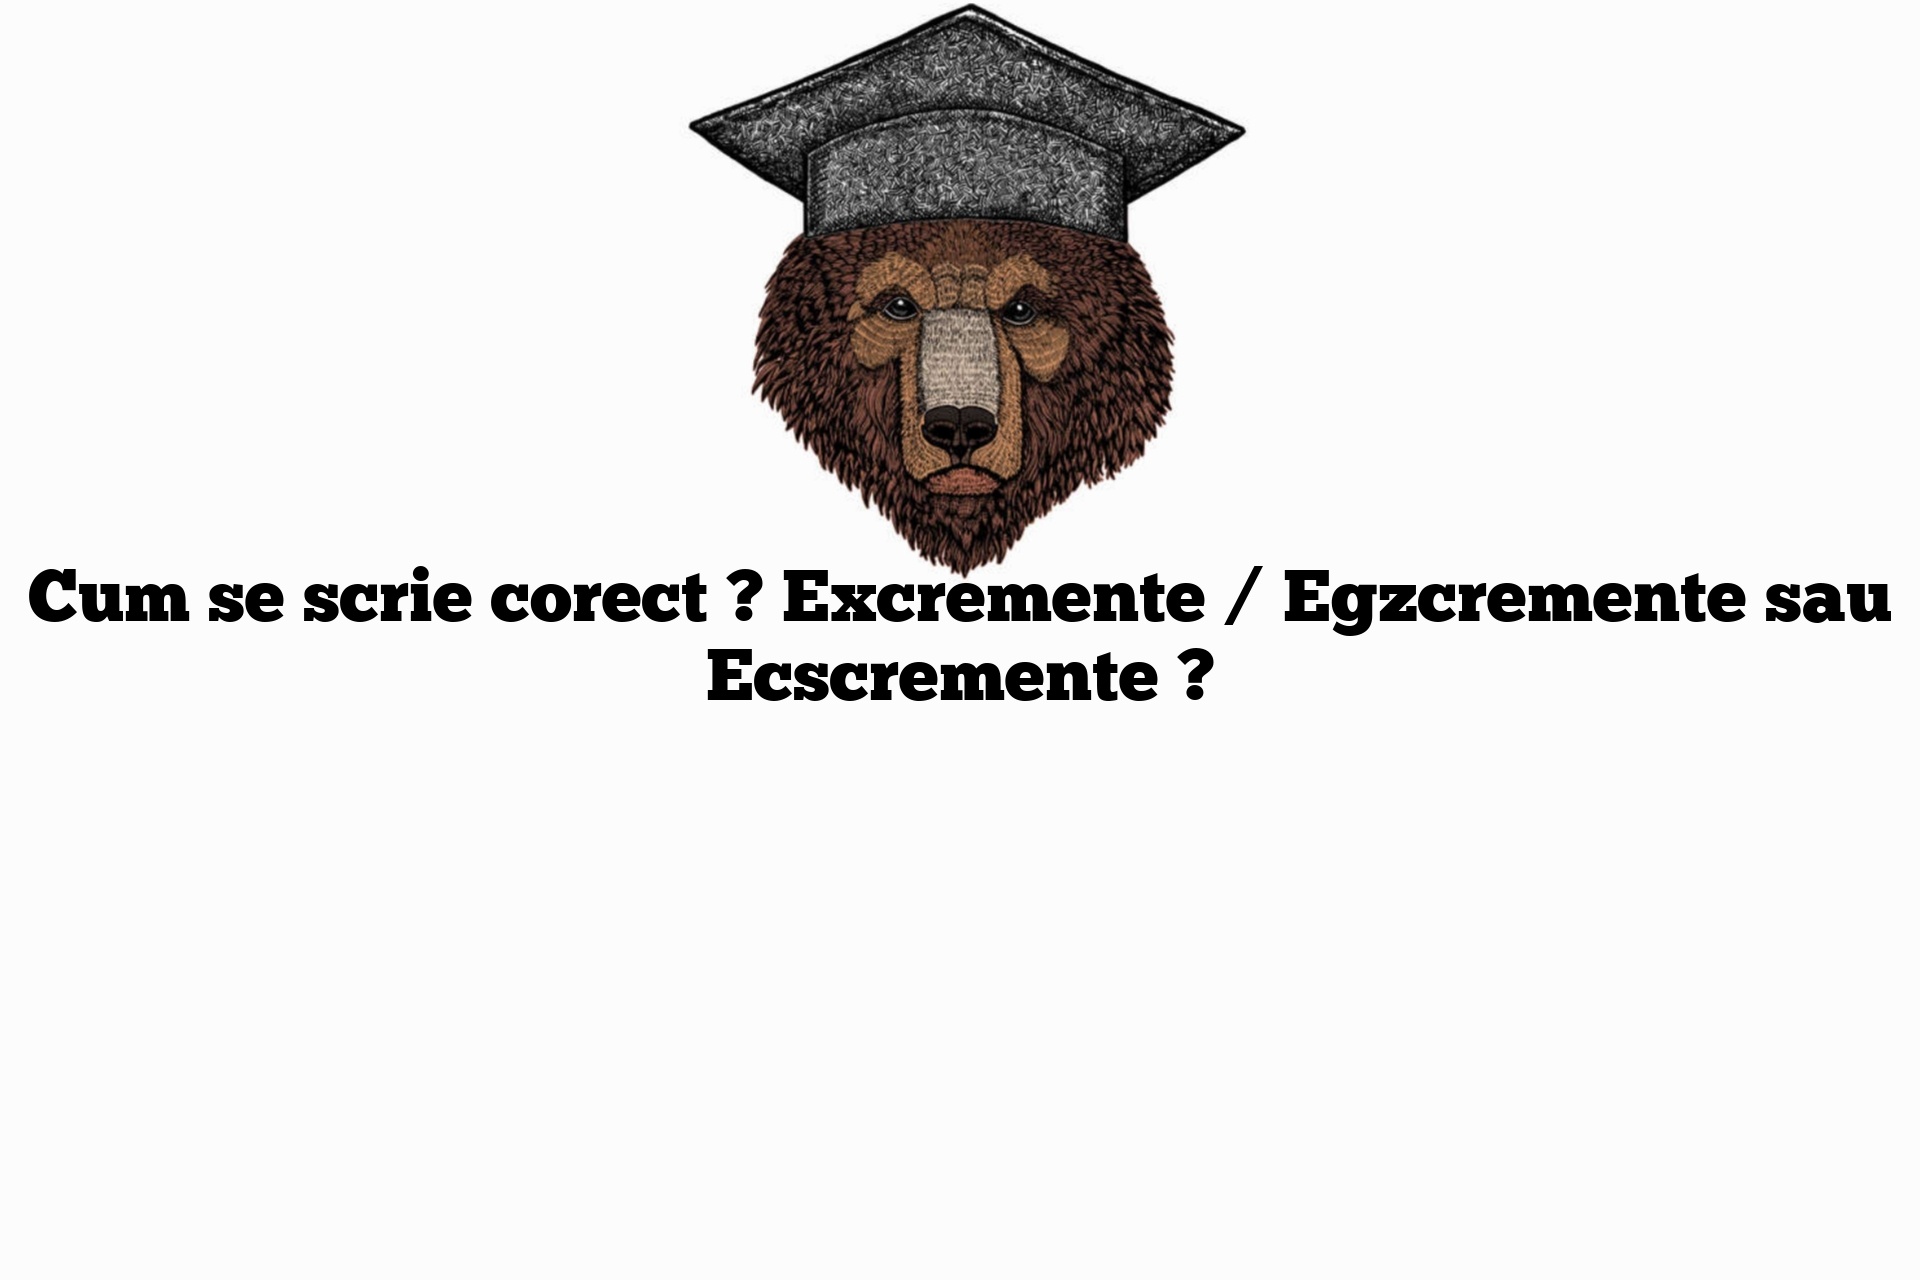 Cum se scrie corect ? Excremente / Egzcremente sau Ecscremente ?